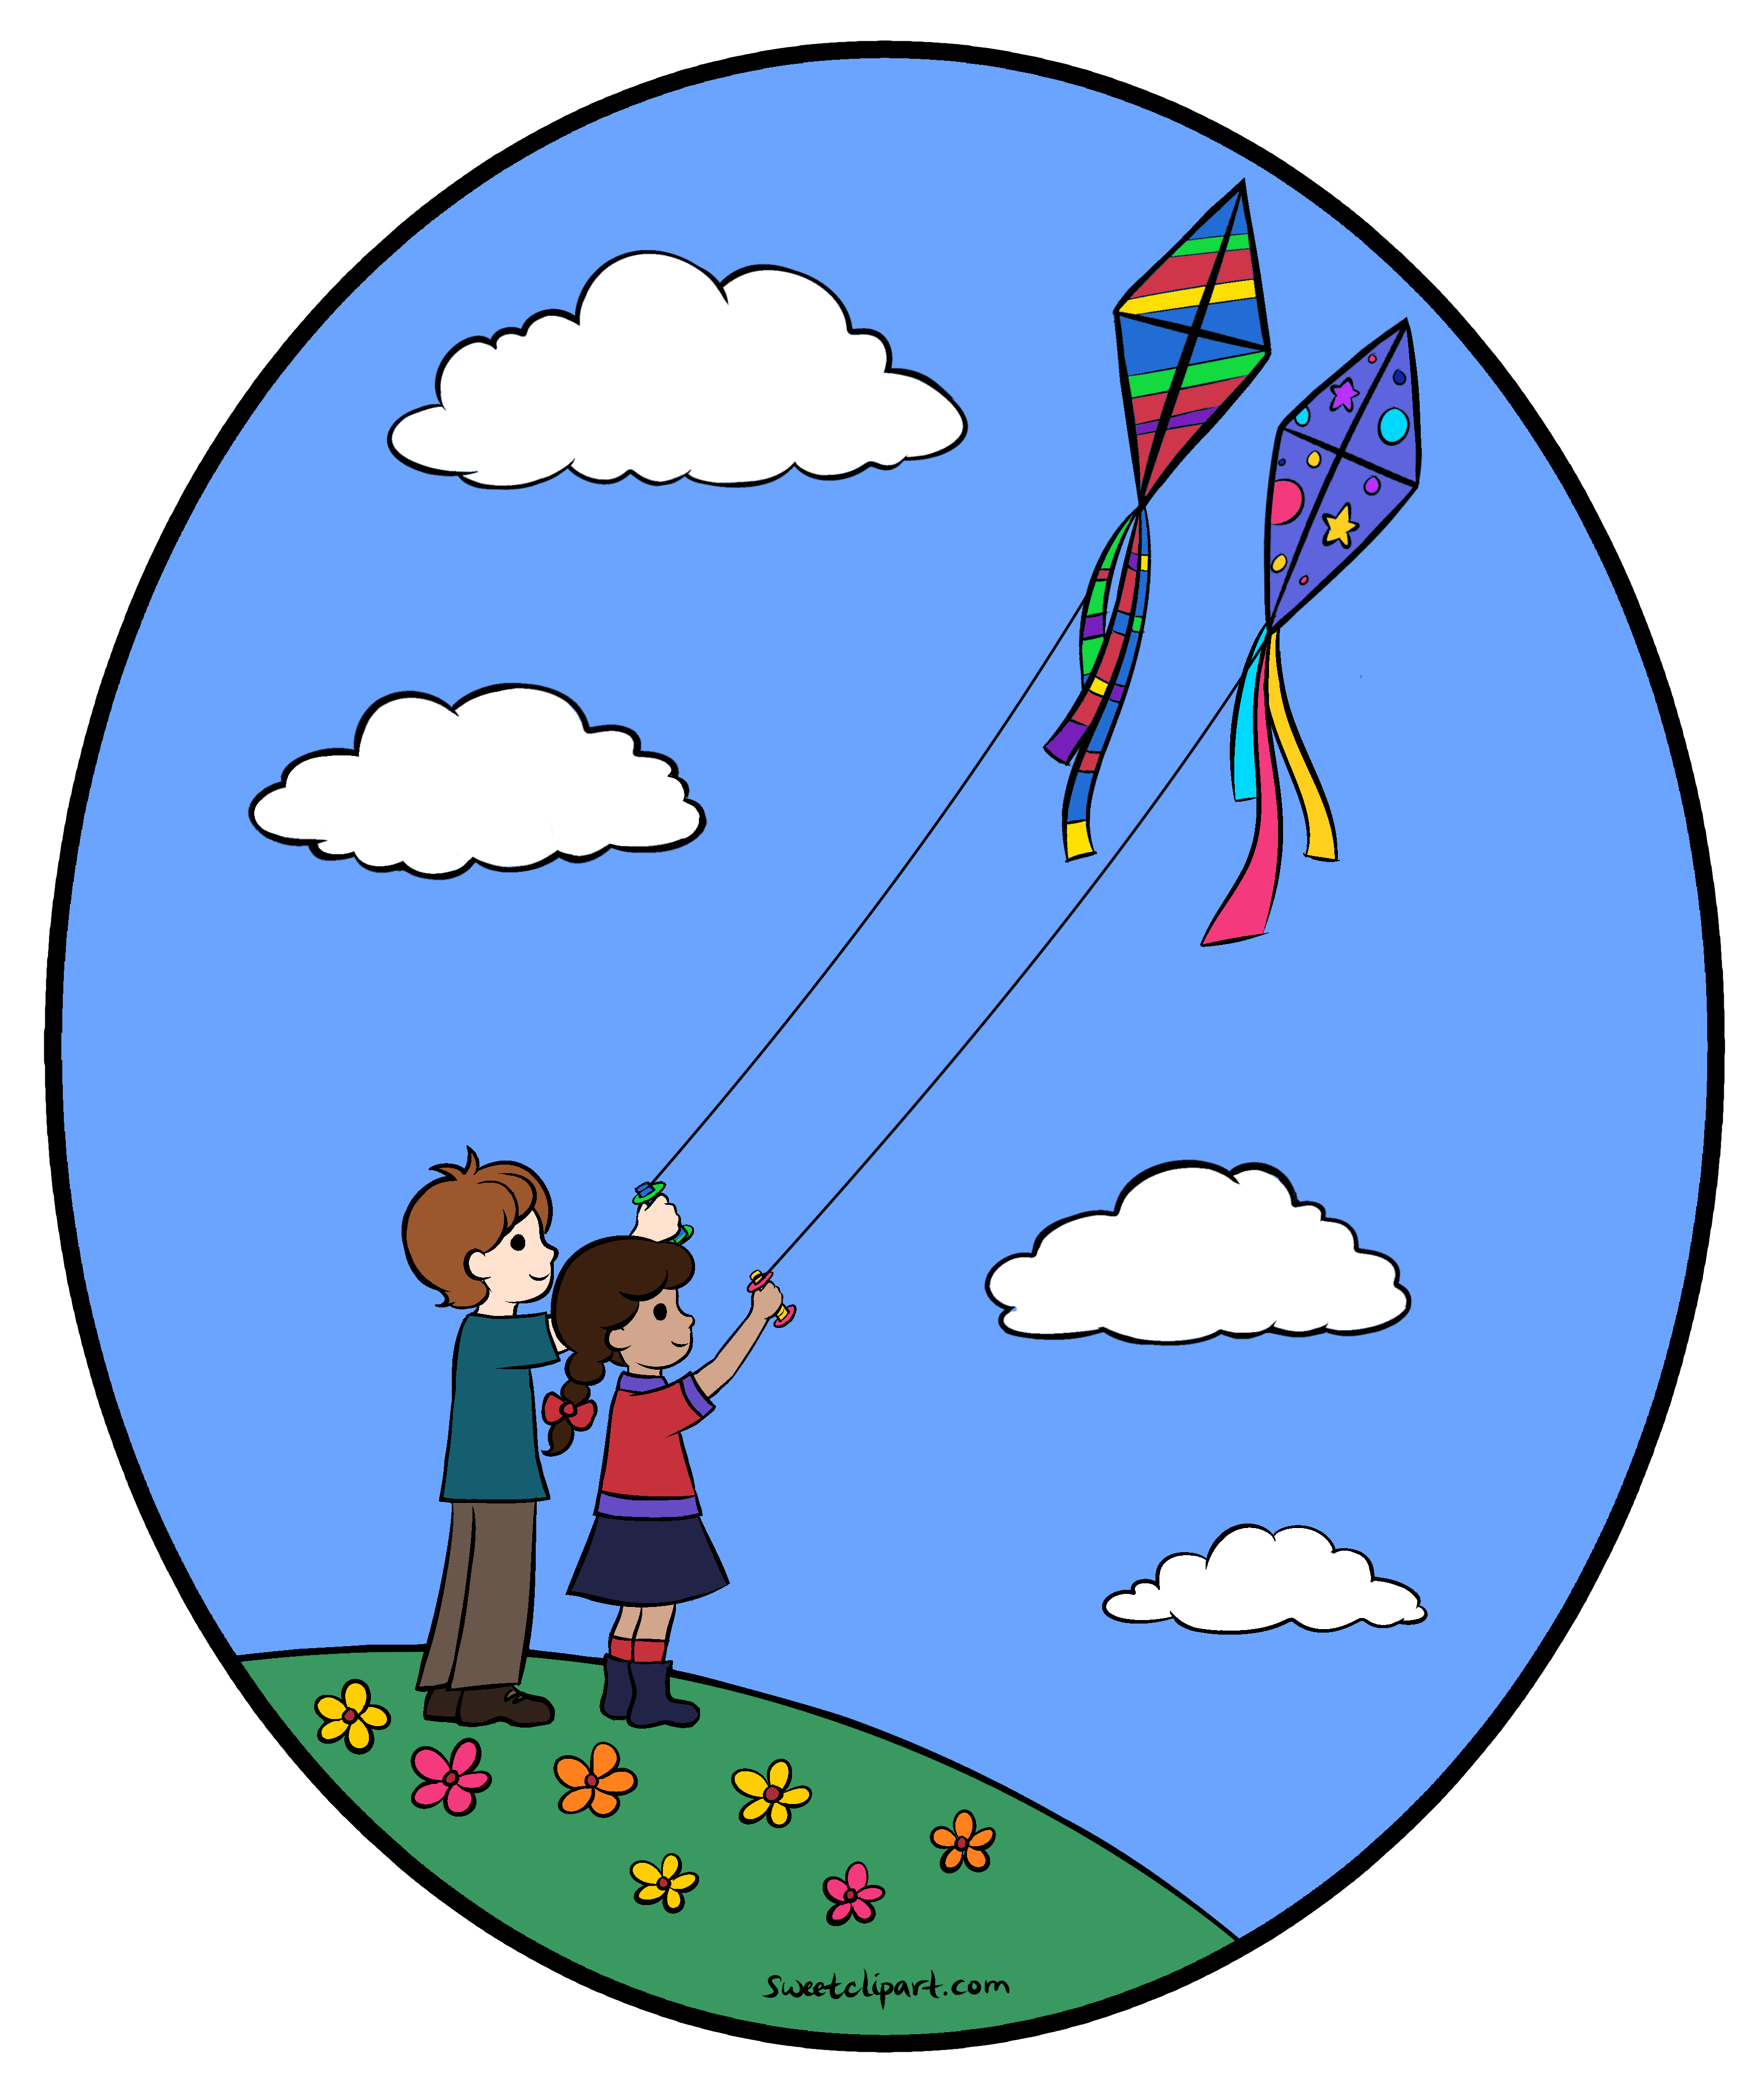 Kite flying clipart.